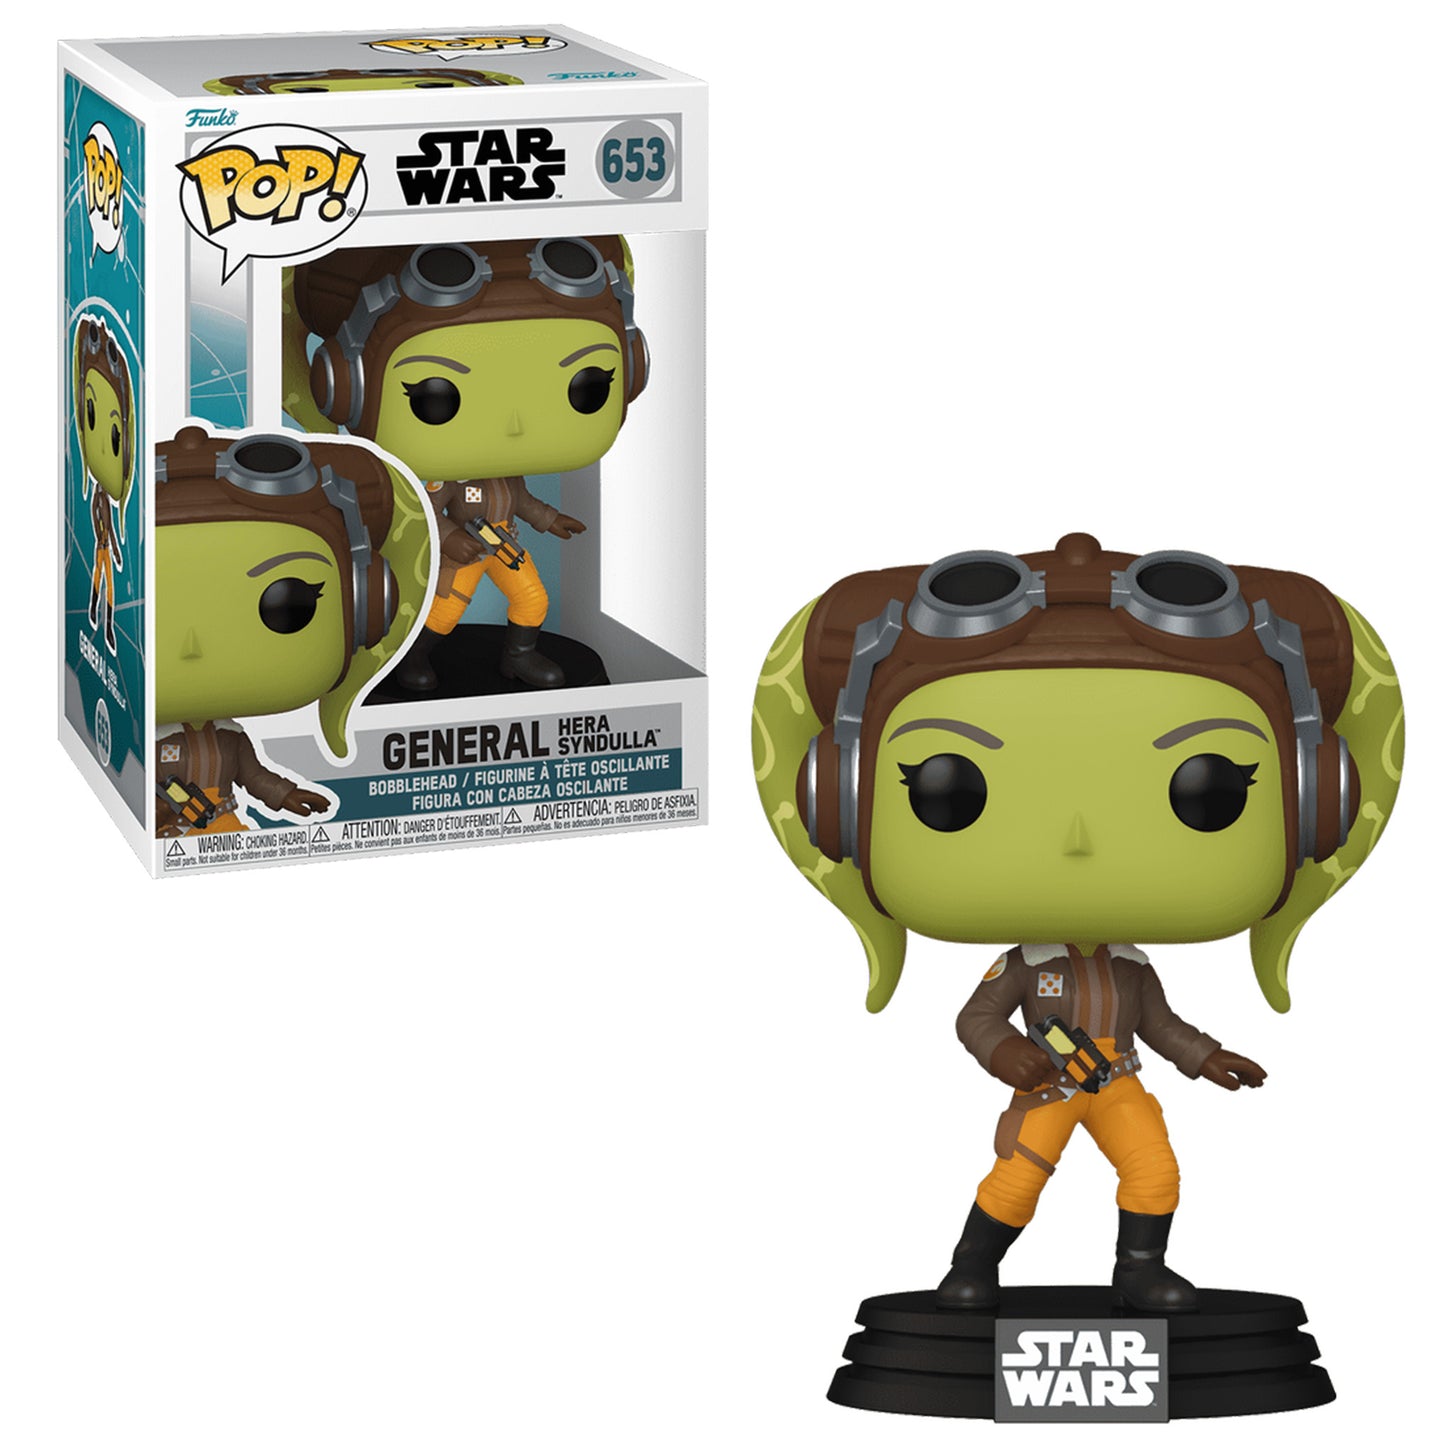 General Hera Star Wars Funko Pop!